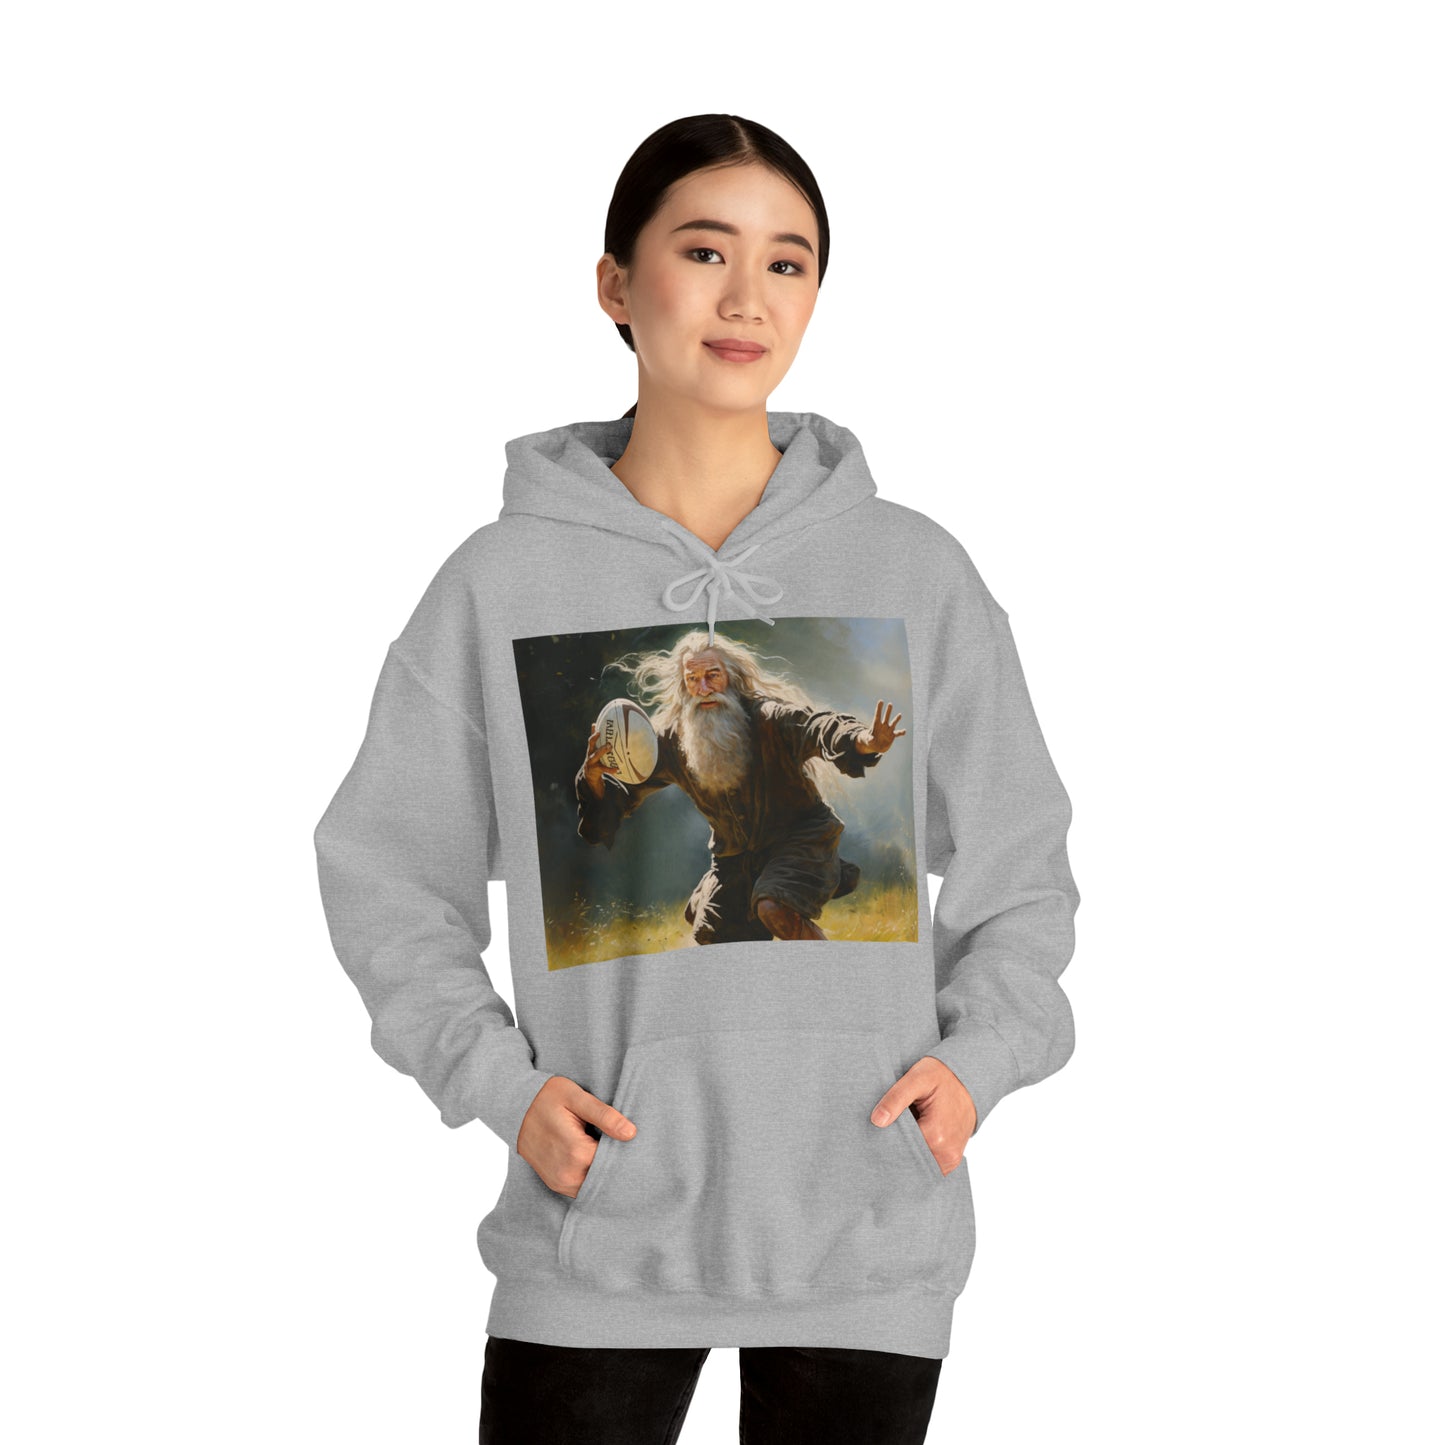 Rugby Gandalf - light hoodies